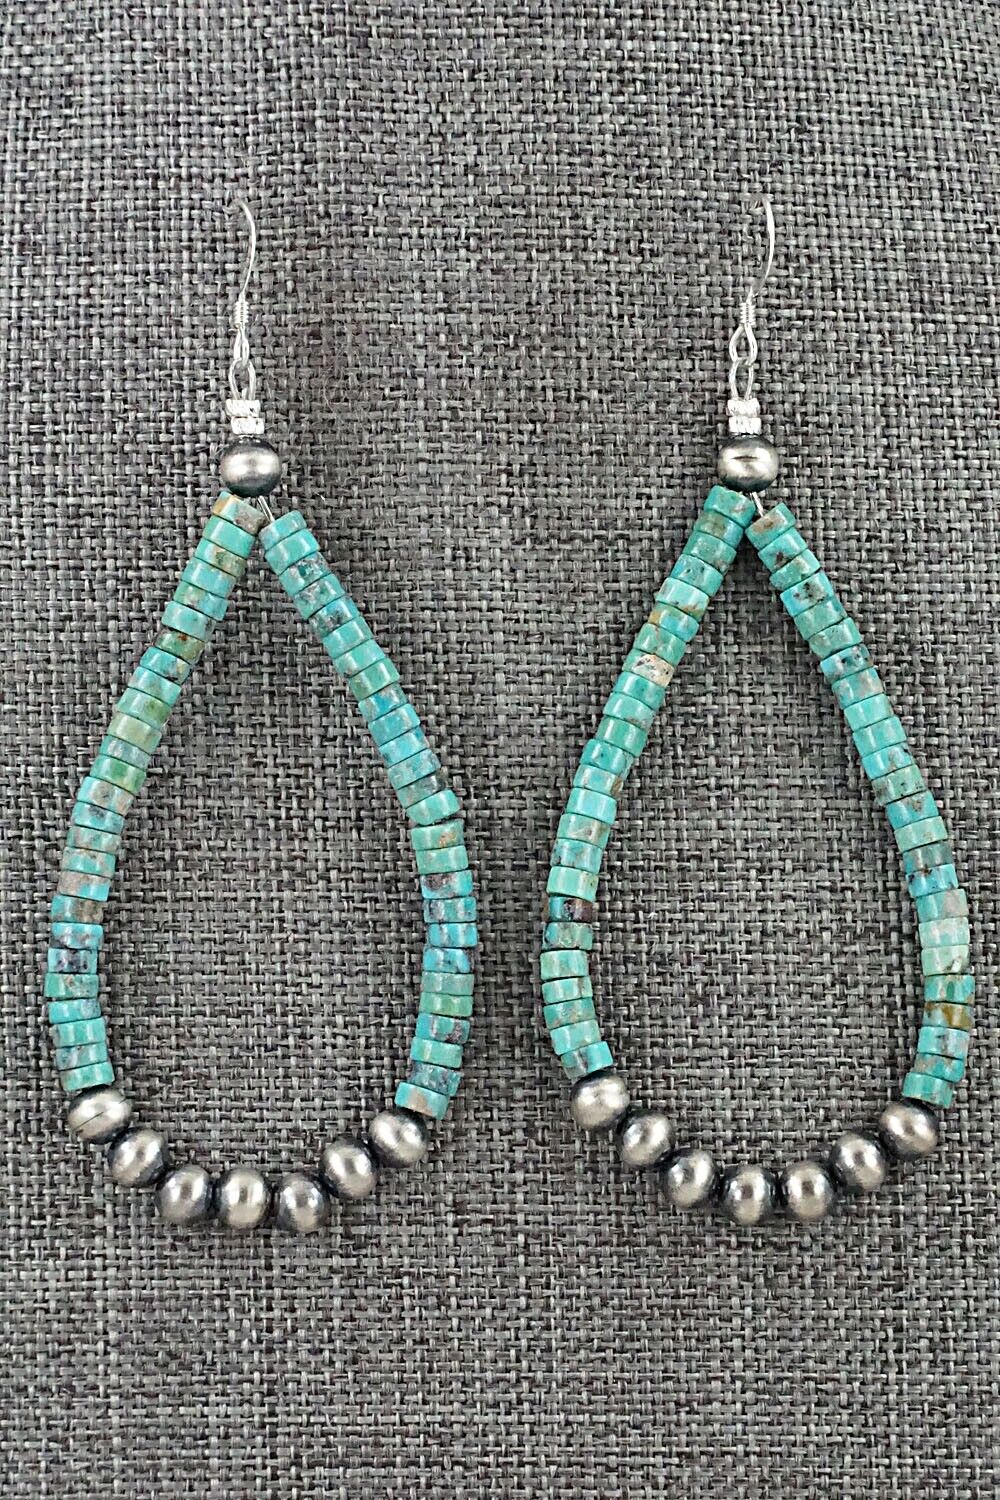 Turquoise & Sterling Silver Earrings - Doreen Jake